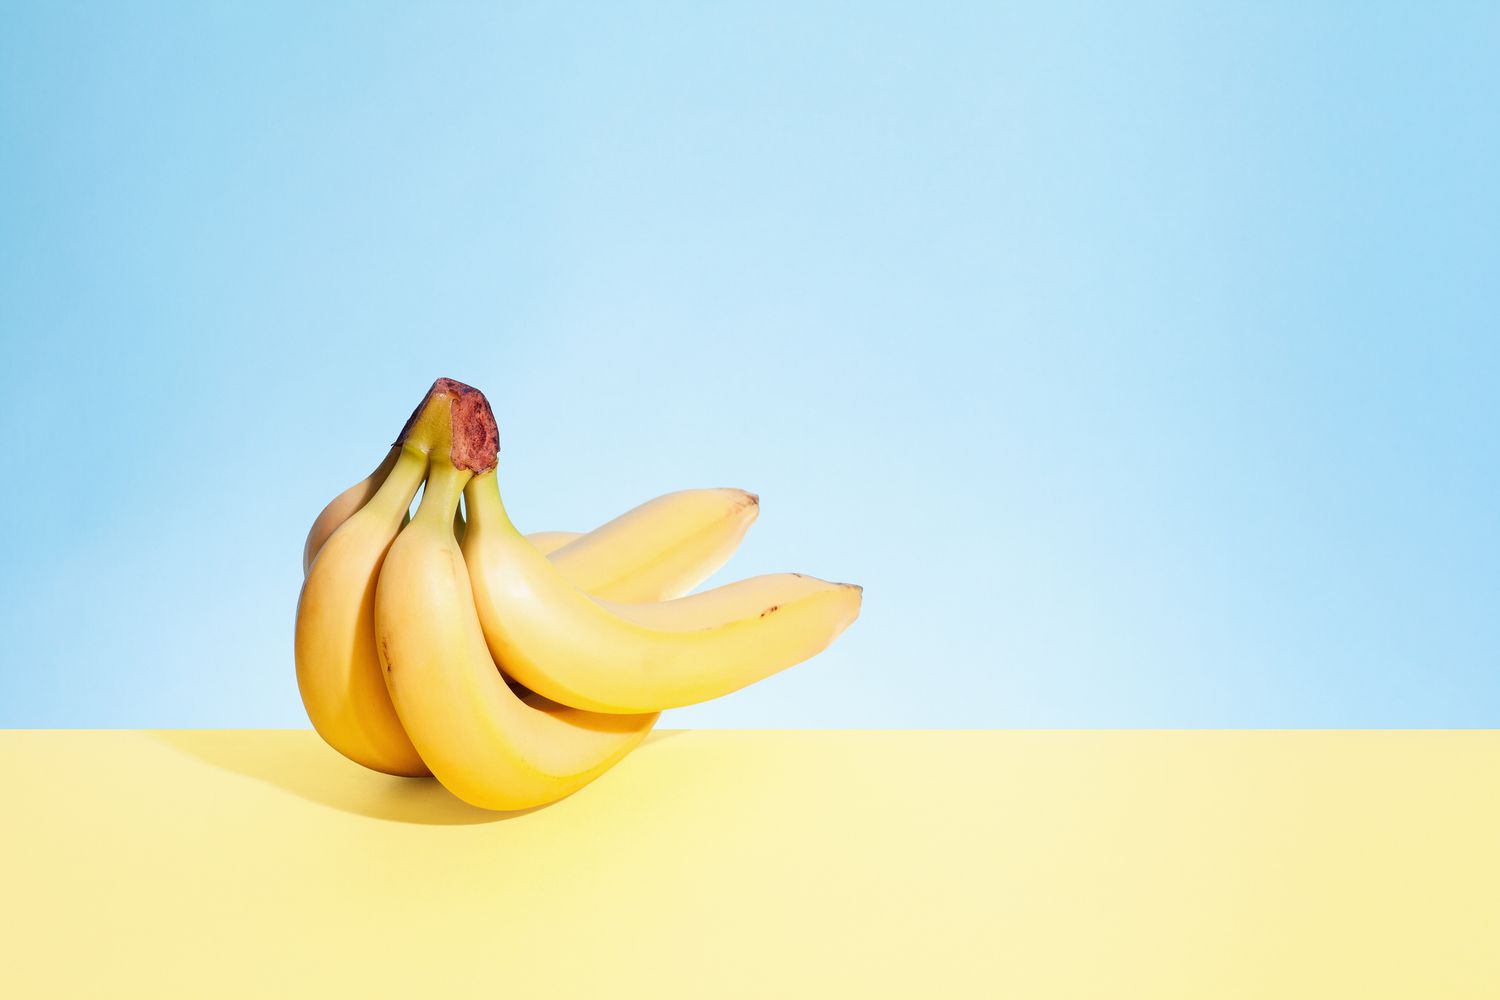 Um cacho de bananas sobre um fundo azul claro e amarelo claro.